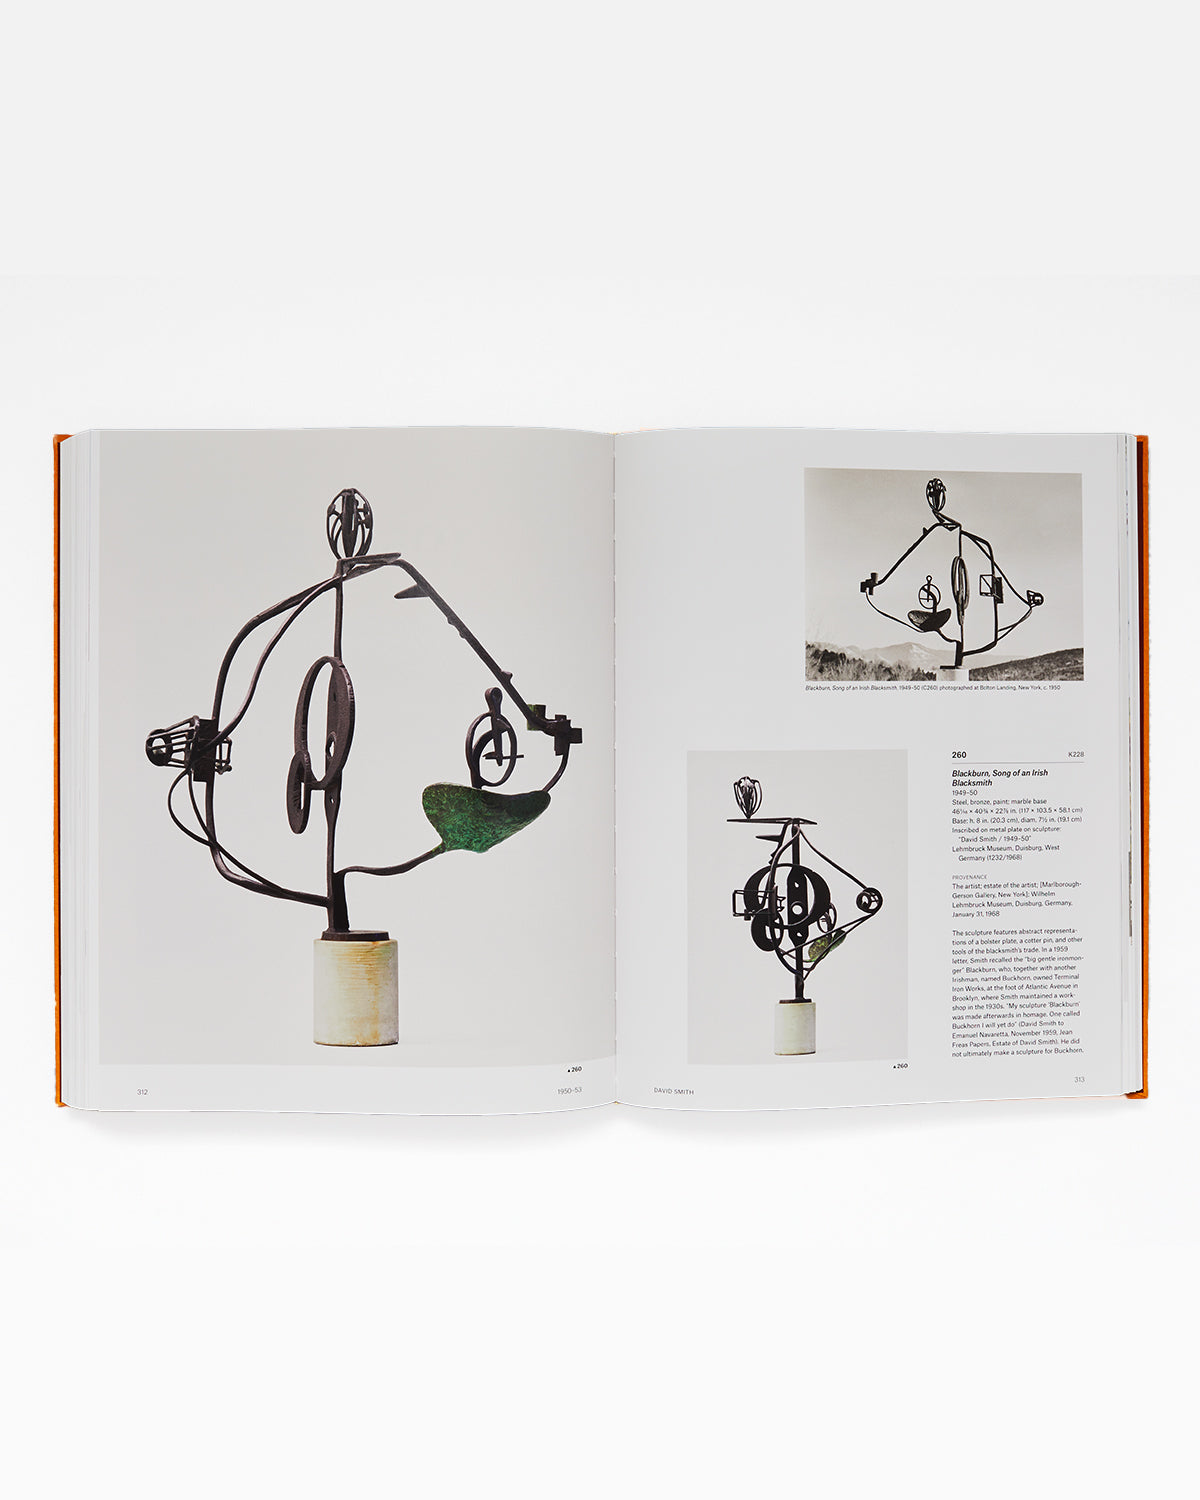 David Smith Sculpture: A Catalogue Raisonné, 1932-1965